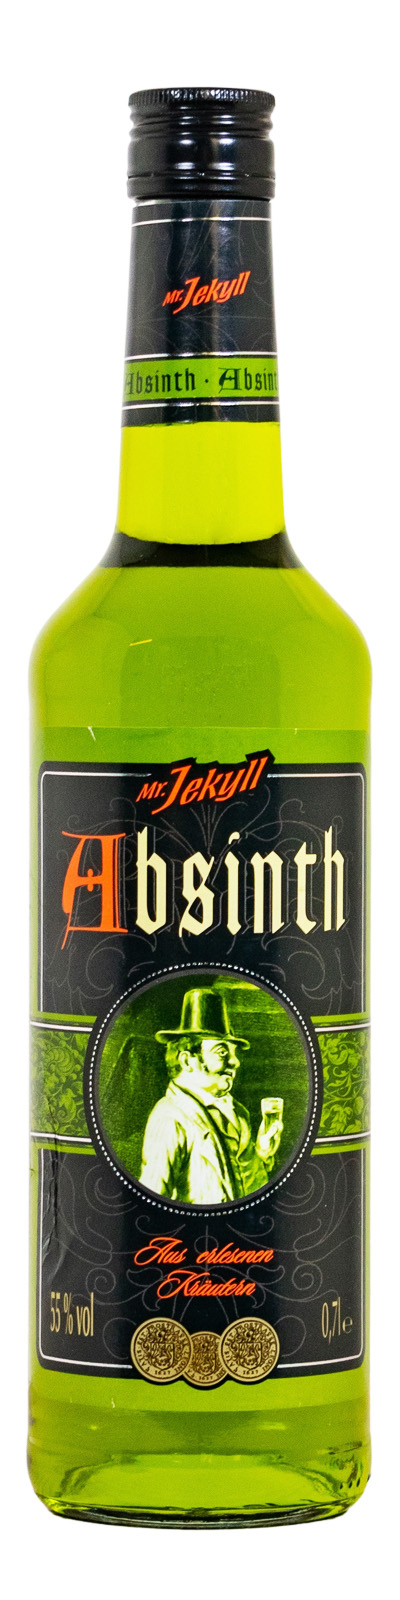 Absinth Mr. Jekyll - 0,7L 55% vol